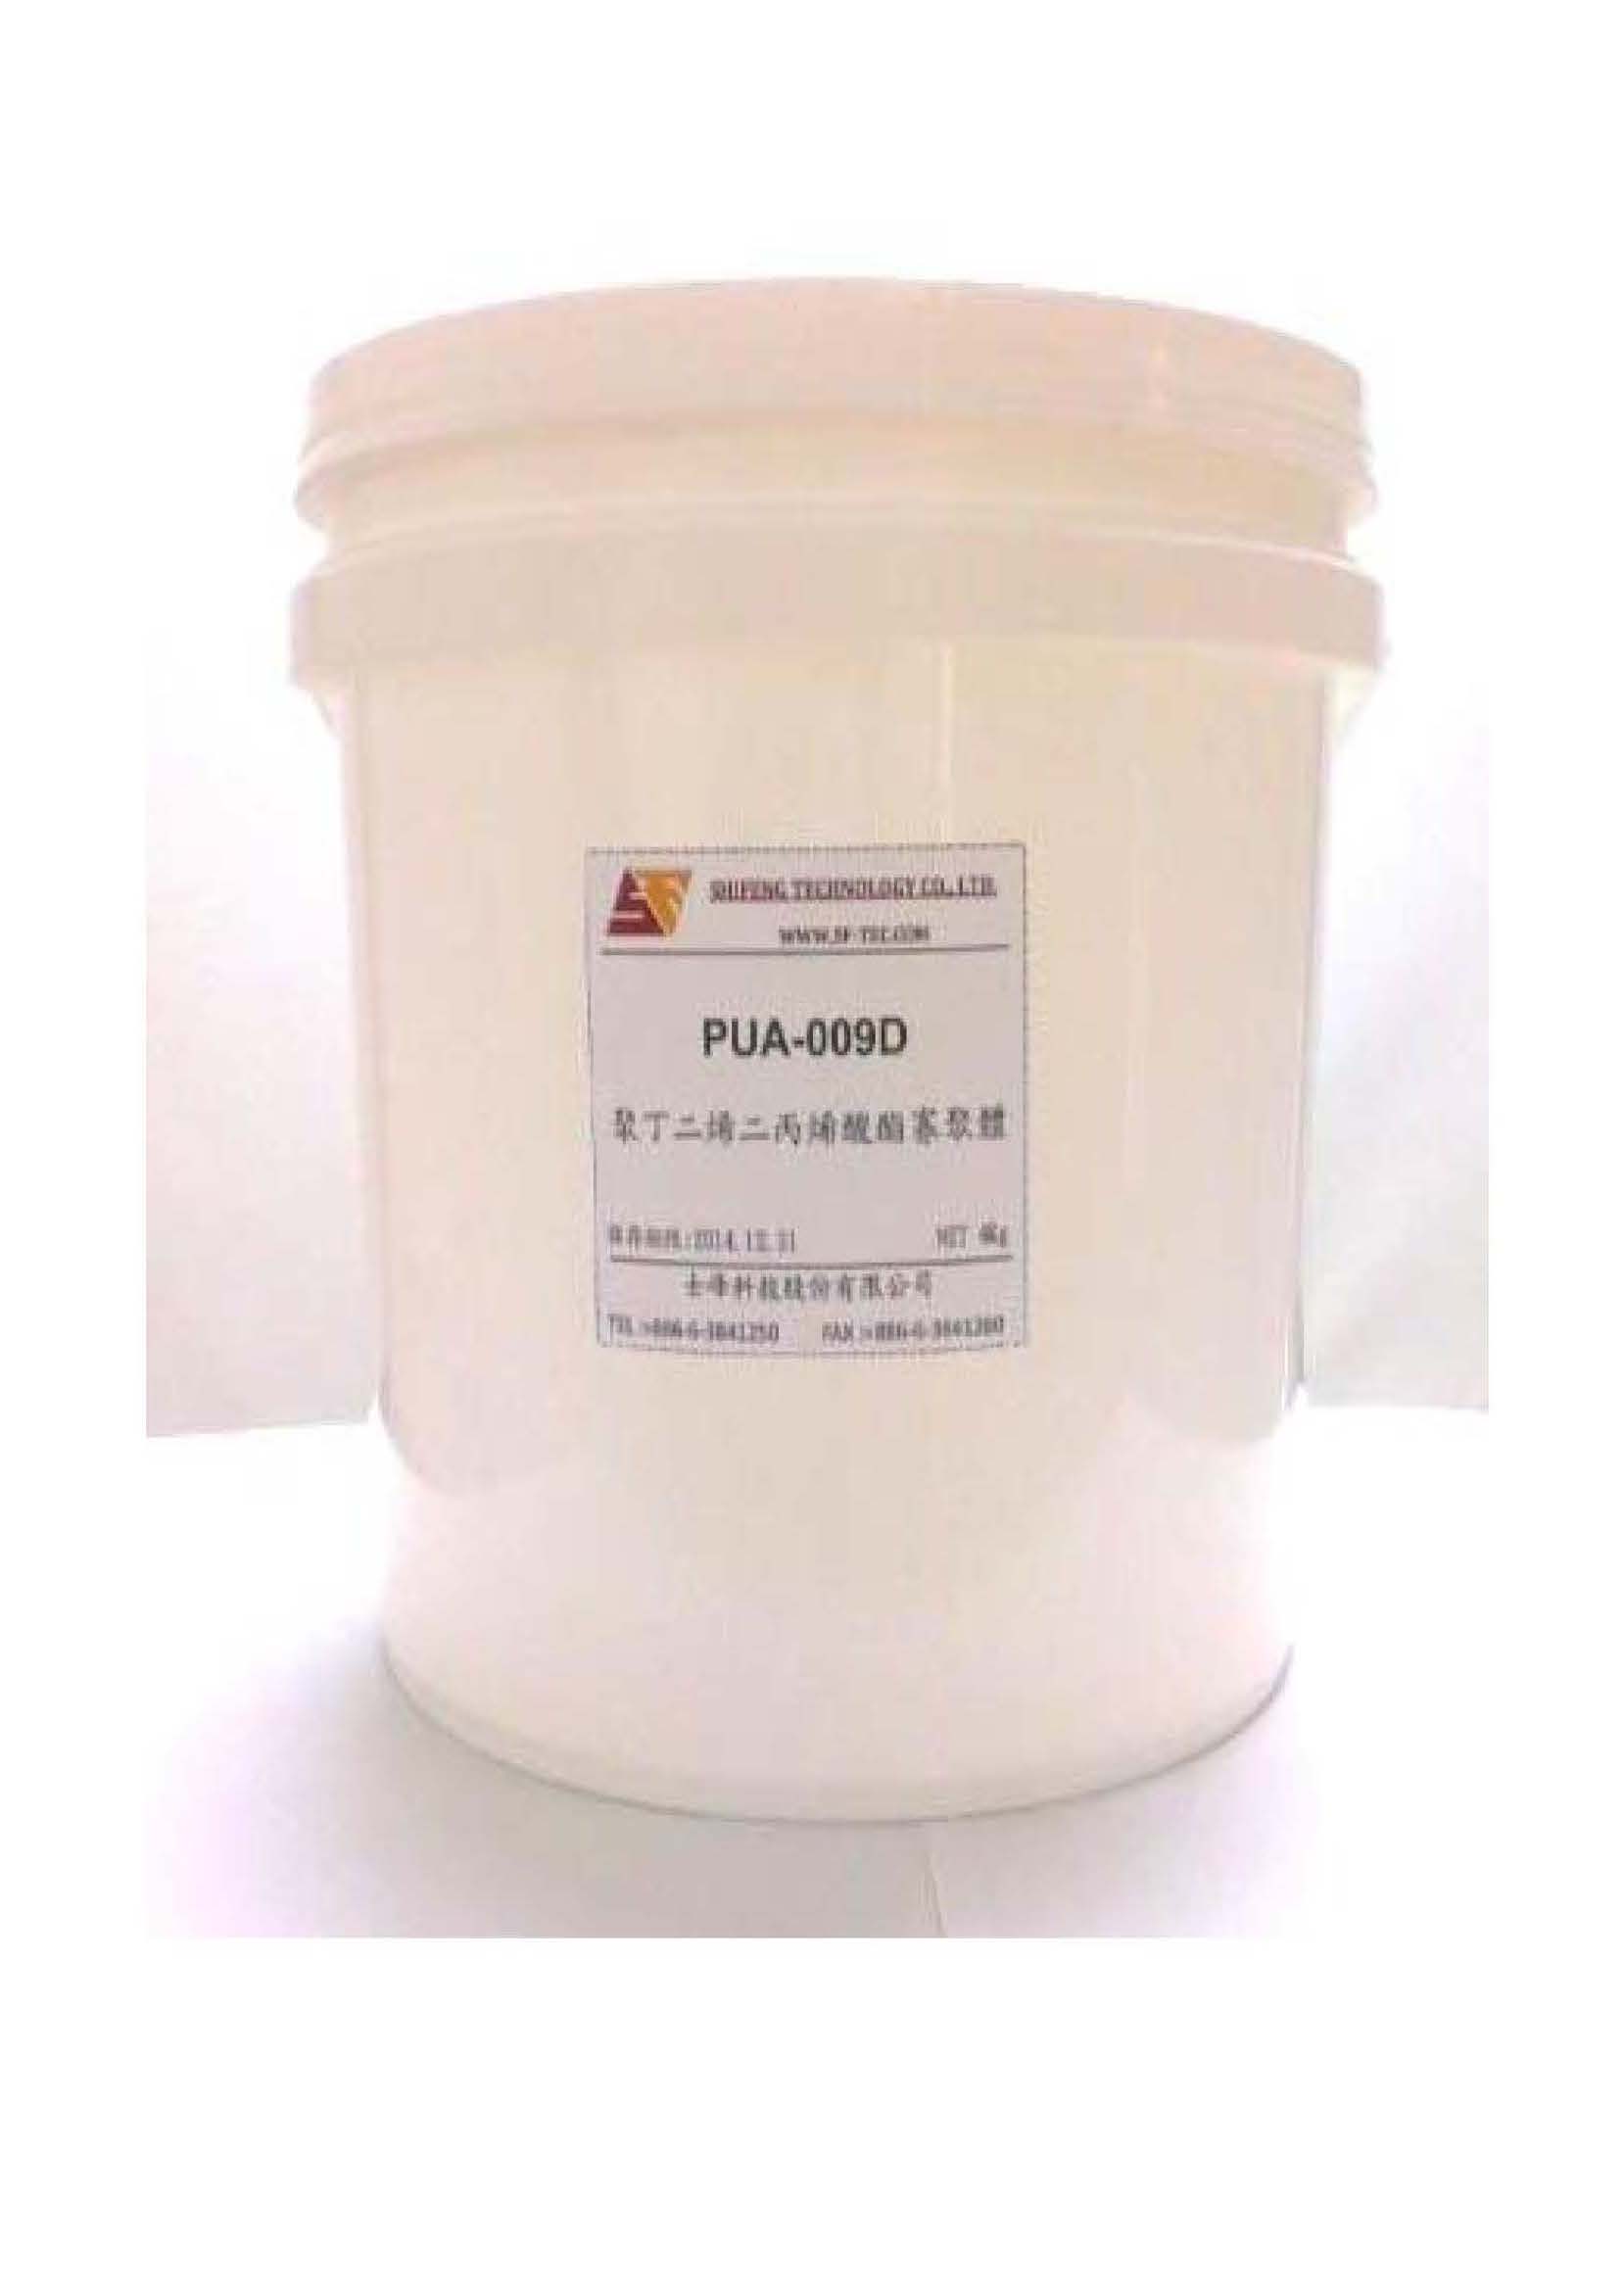 寡聚物 Polybutadiene diacrylate oligomer